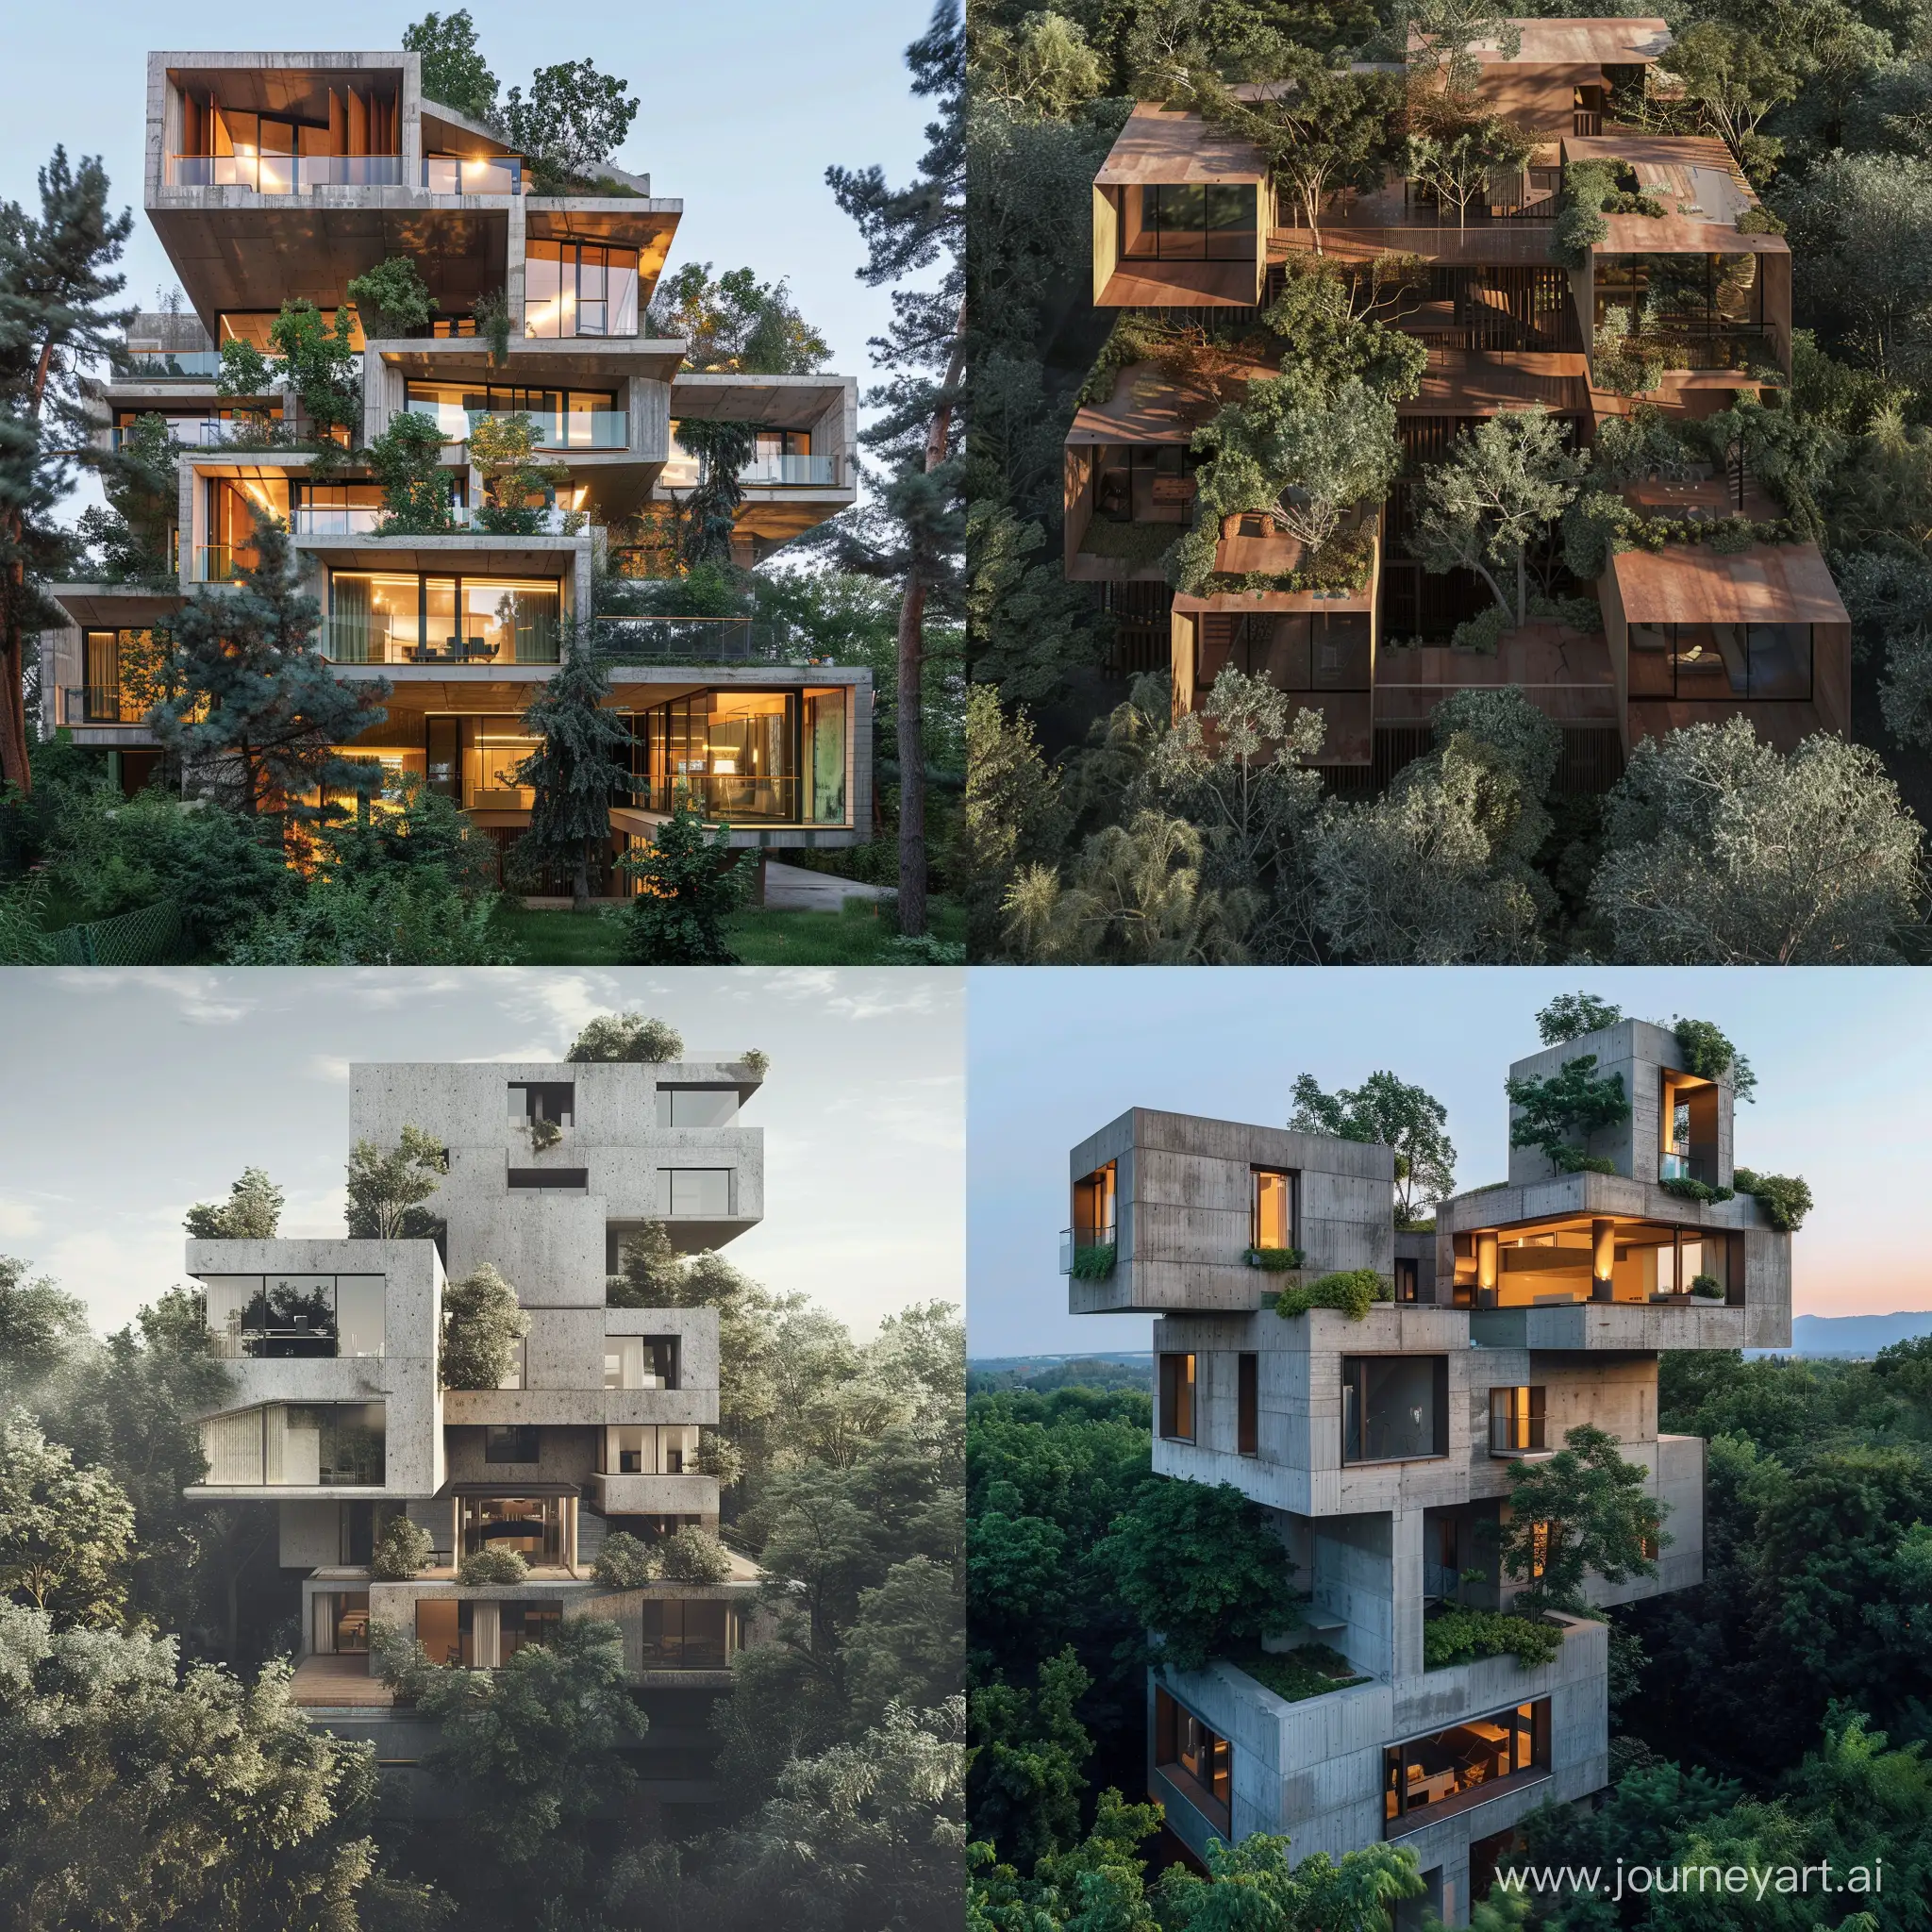 Edificio deconstructivista en un terreno lleno de árboles, con concepto "armonía en la diversidad" 